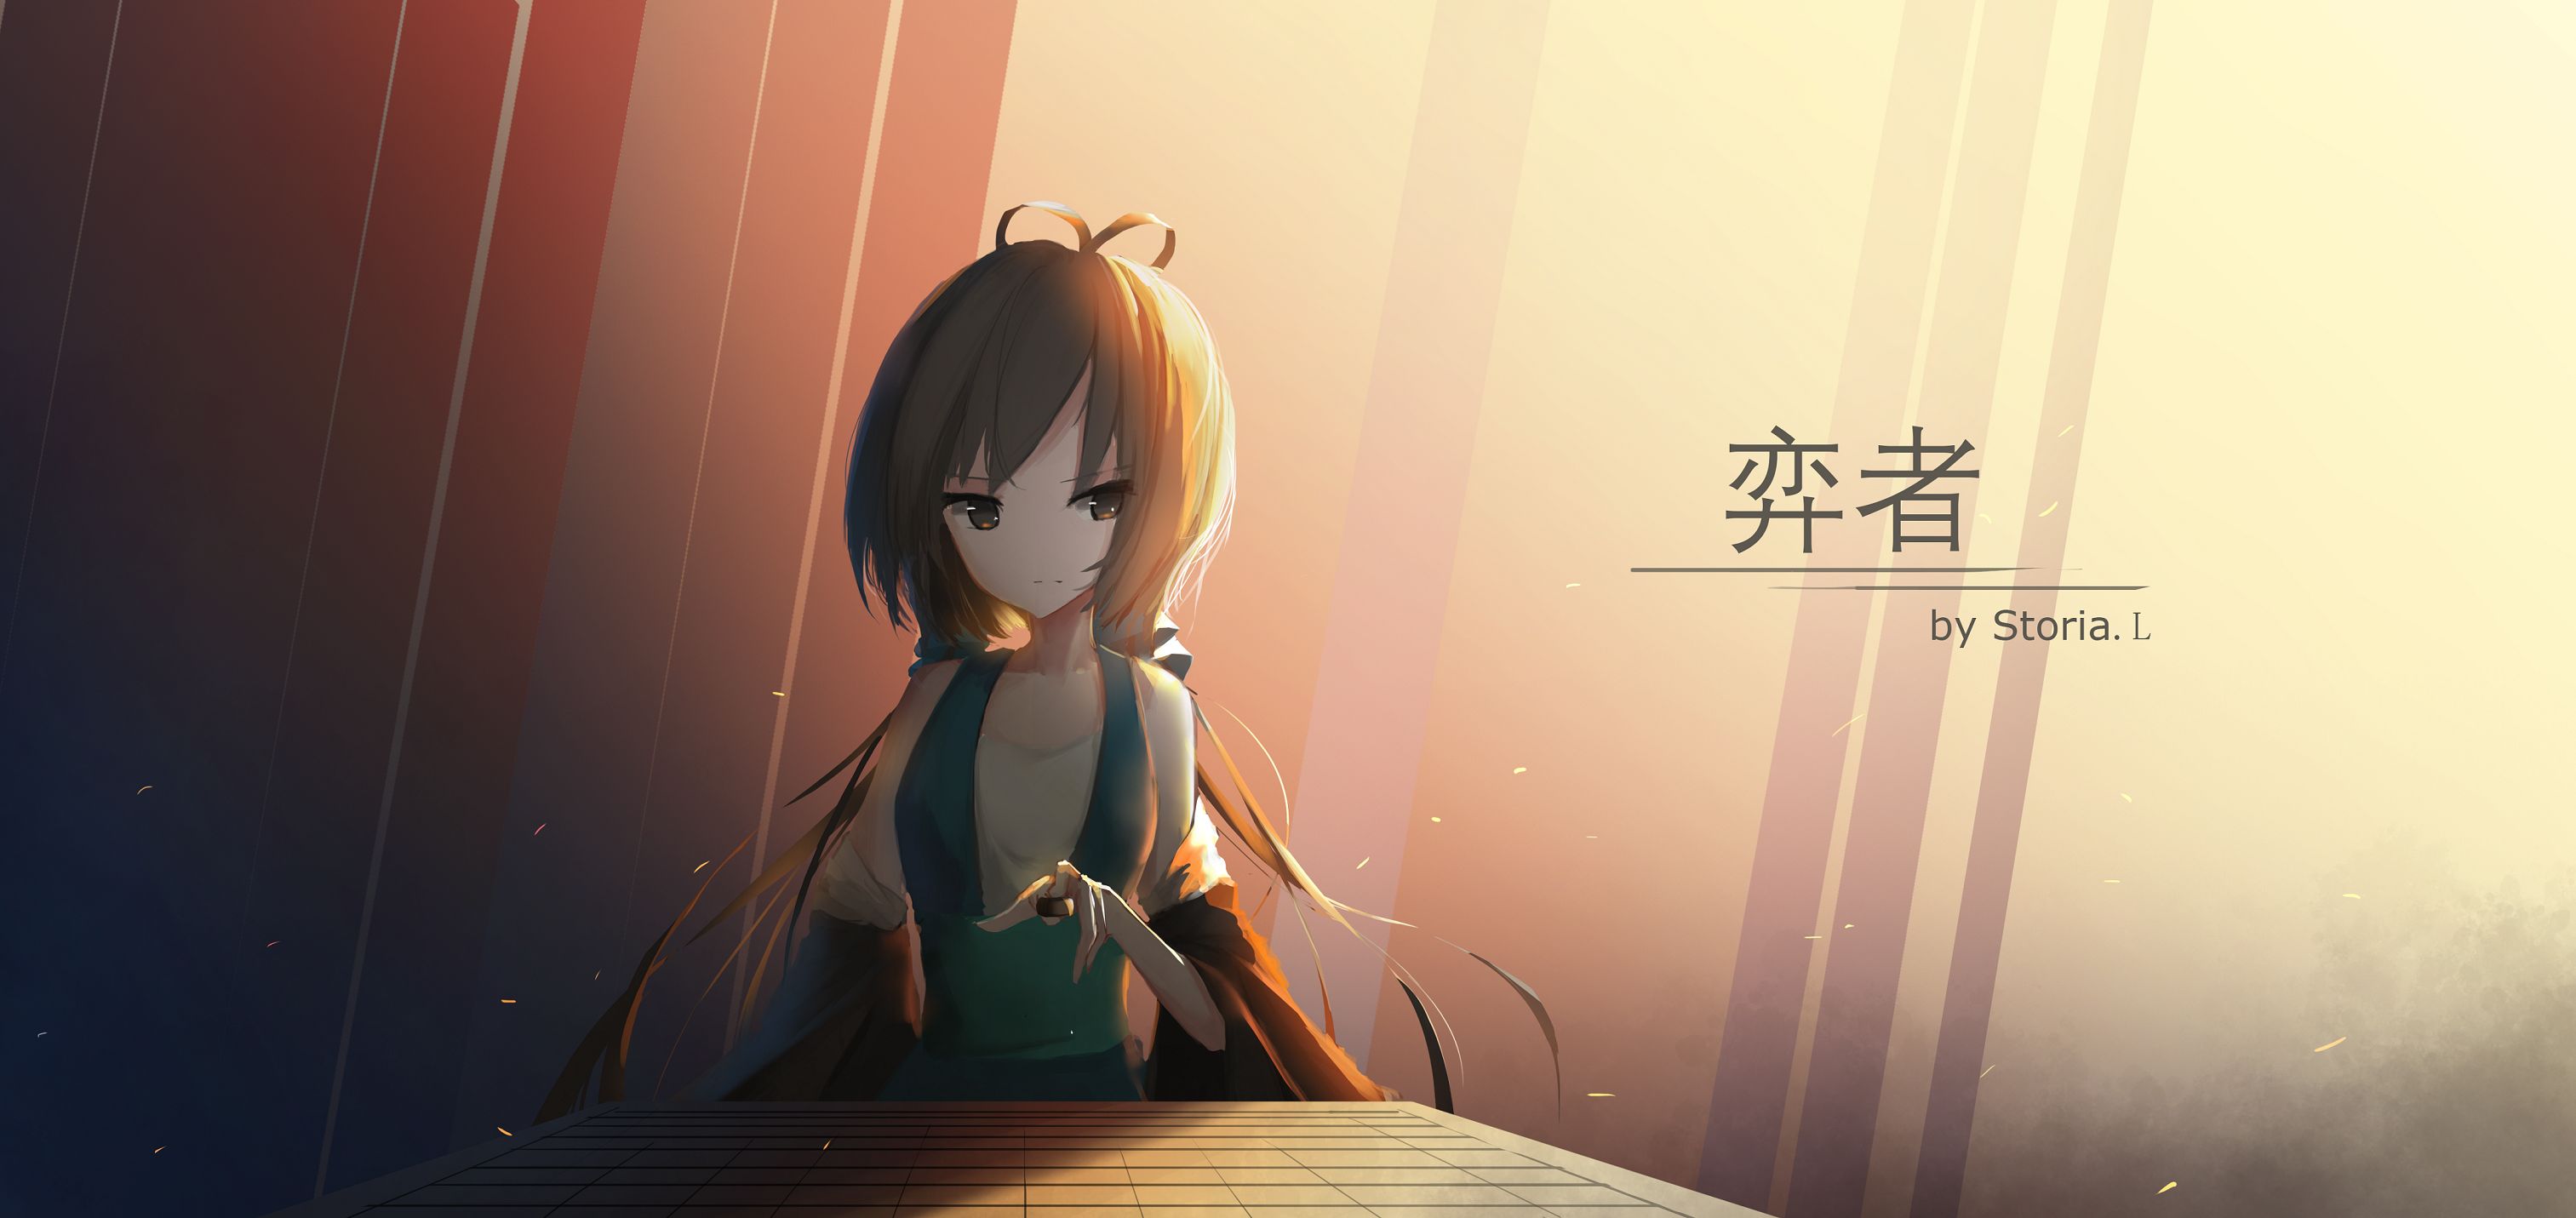 Descarga gratuita de fondo de pantalla para móvil de Vocaloid, Animado, Luo Tianyi.